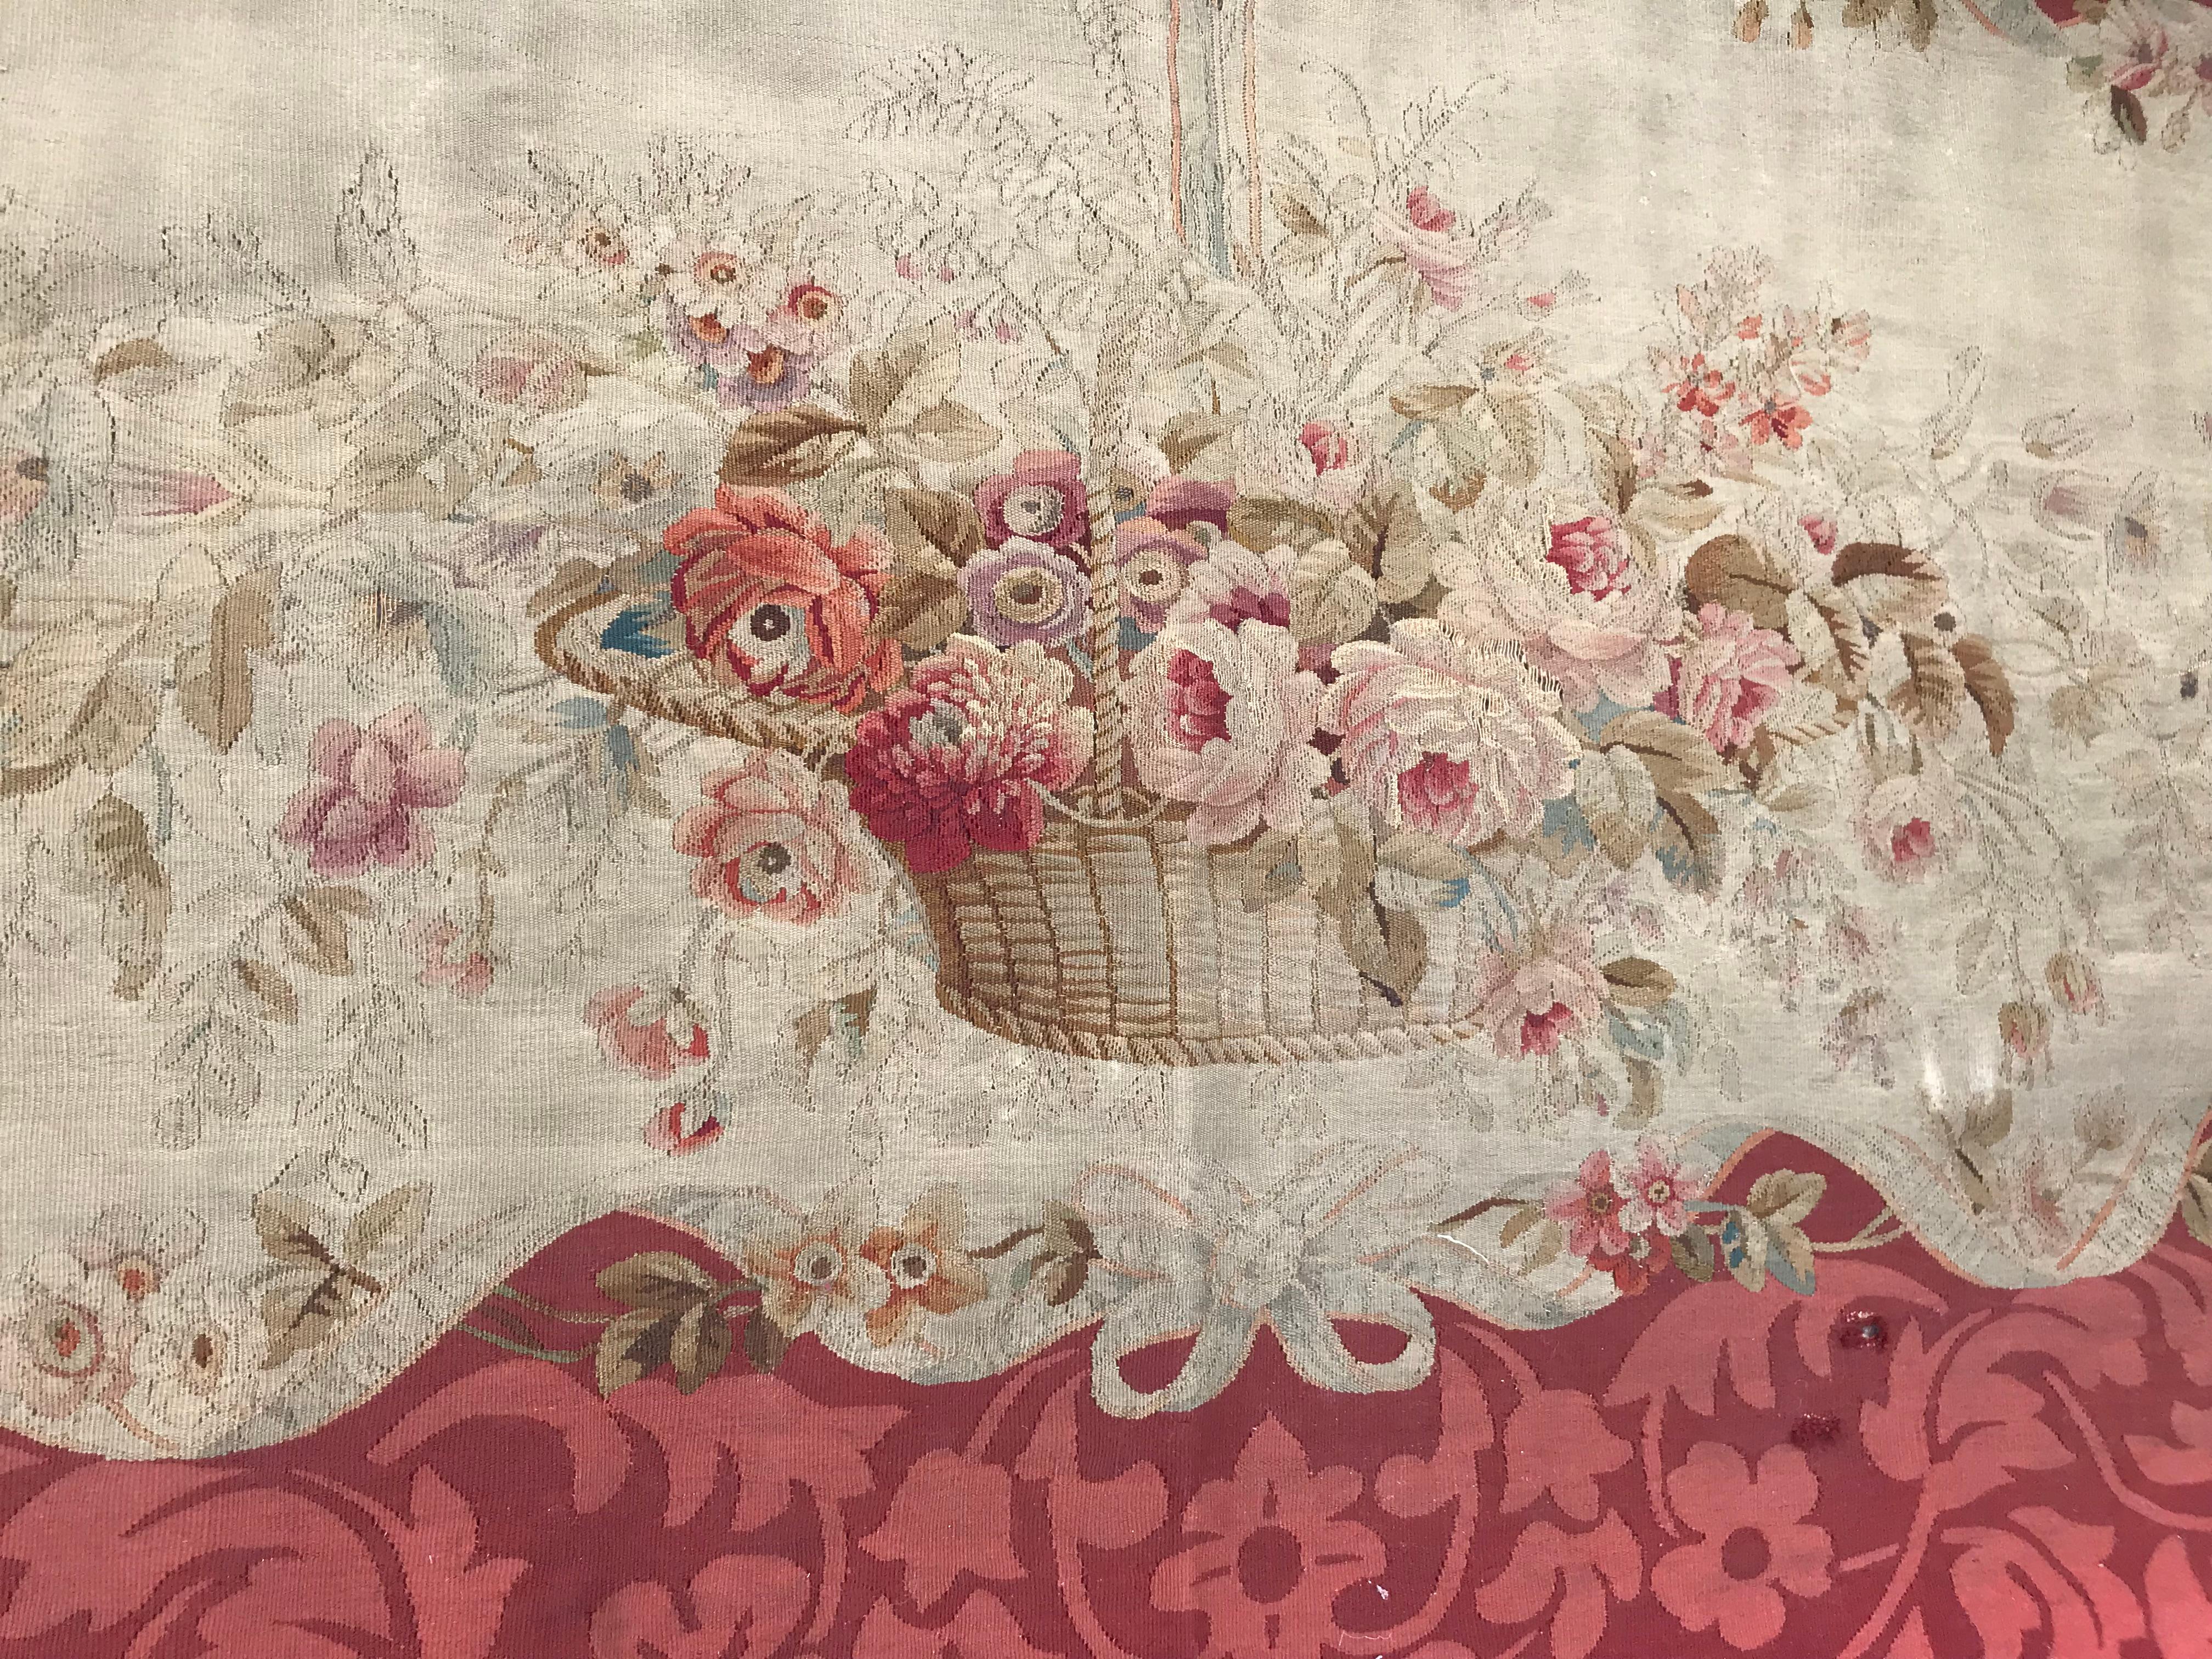 Feine antike Aubusson Wandteppich, mit einem schönen floralen Design und schönen Farben mit rot, rosa, lila, grün und gelb, ganz handgewebt, mit Wolle und Seide auf Baumwollbasis, ursprünglich für ein Sofa Abdeckung auf Napoleon der dritten Periode